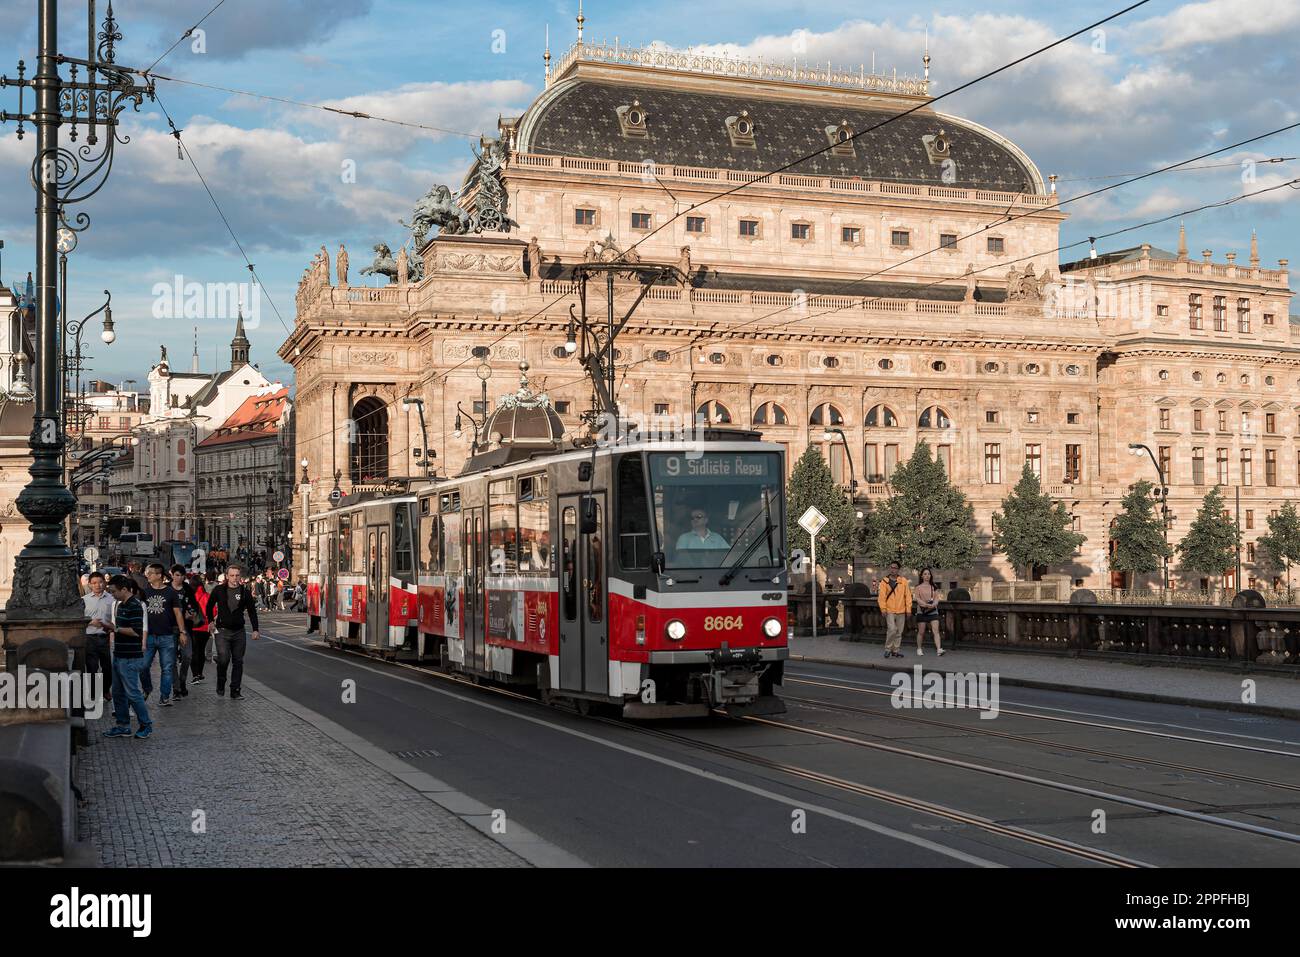 Praga, Repubblica Ceca - 15 2019 maggio: Tram sul Ponte della Legione di fronte al Teatro Foto Stock